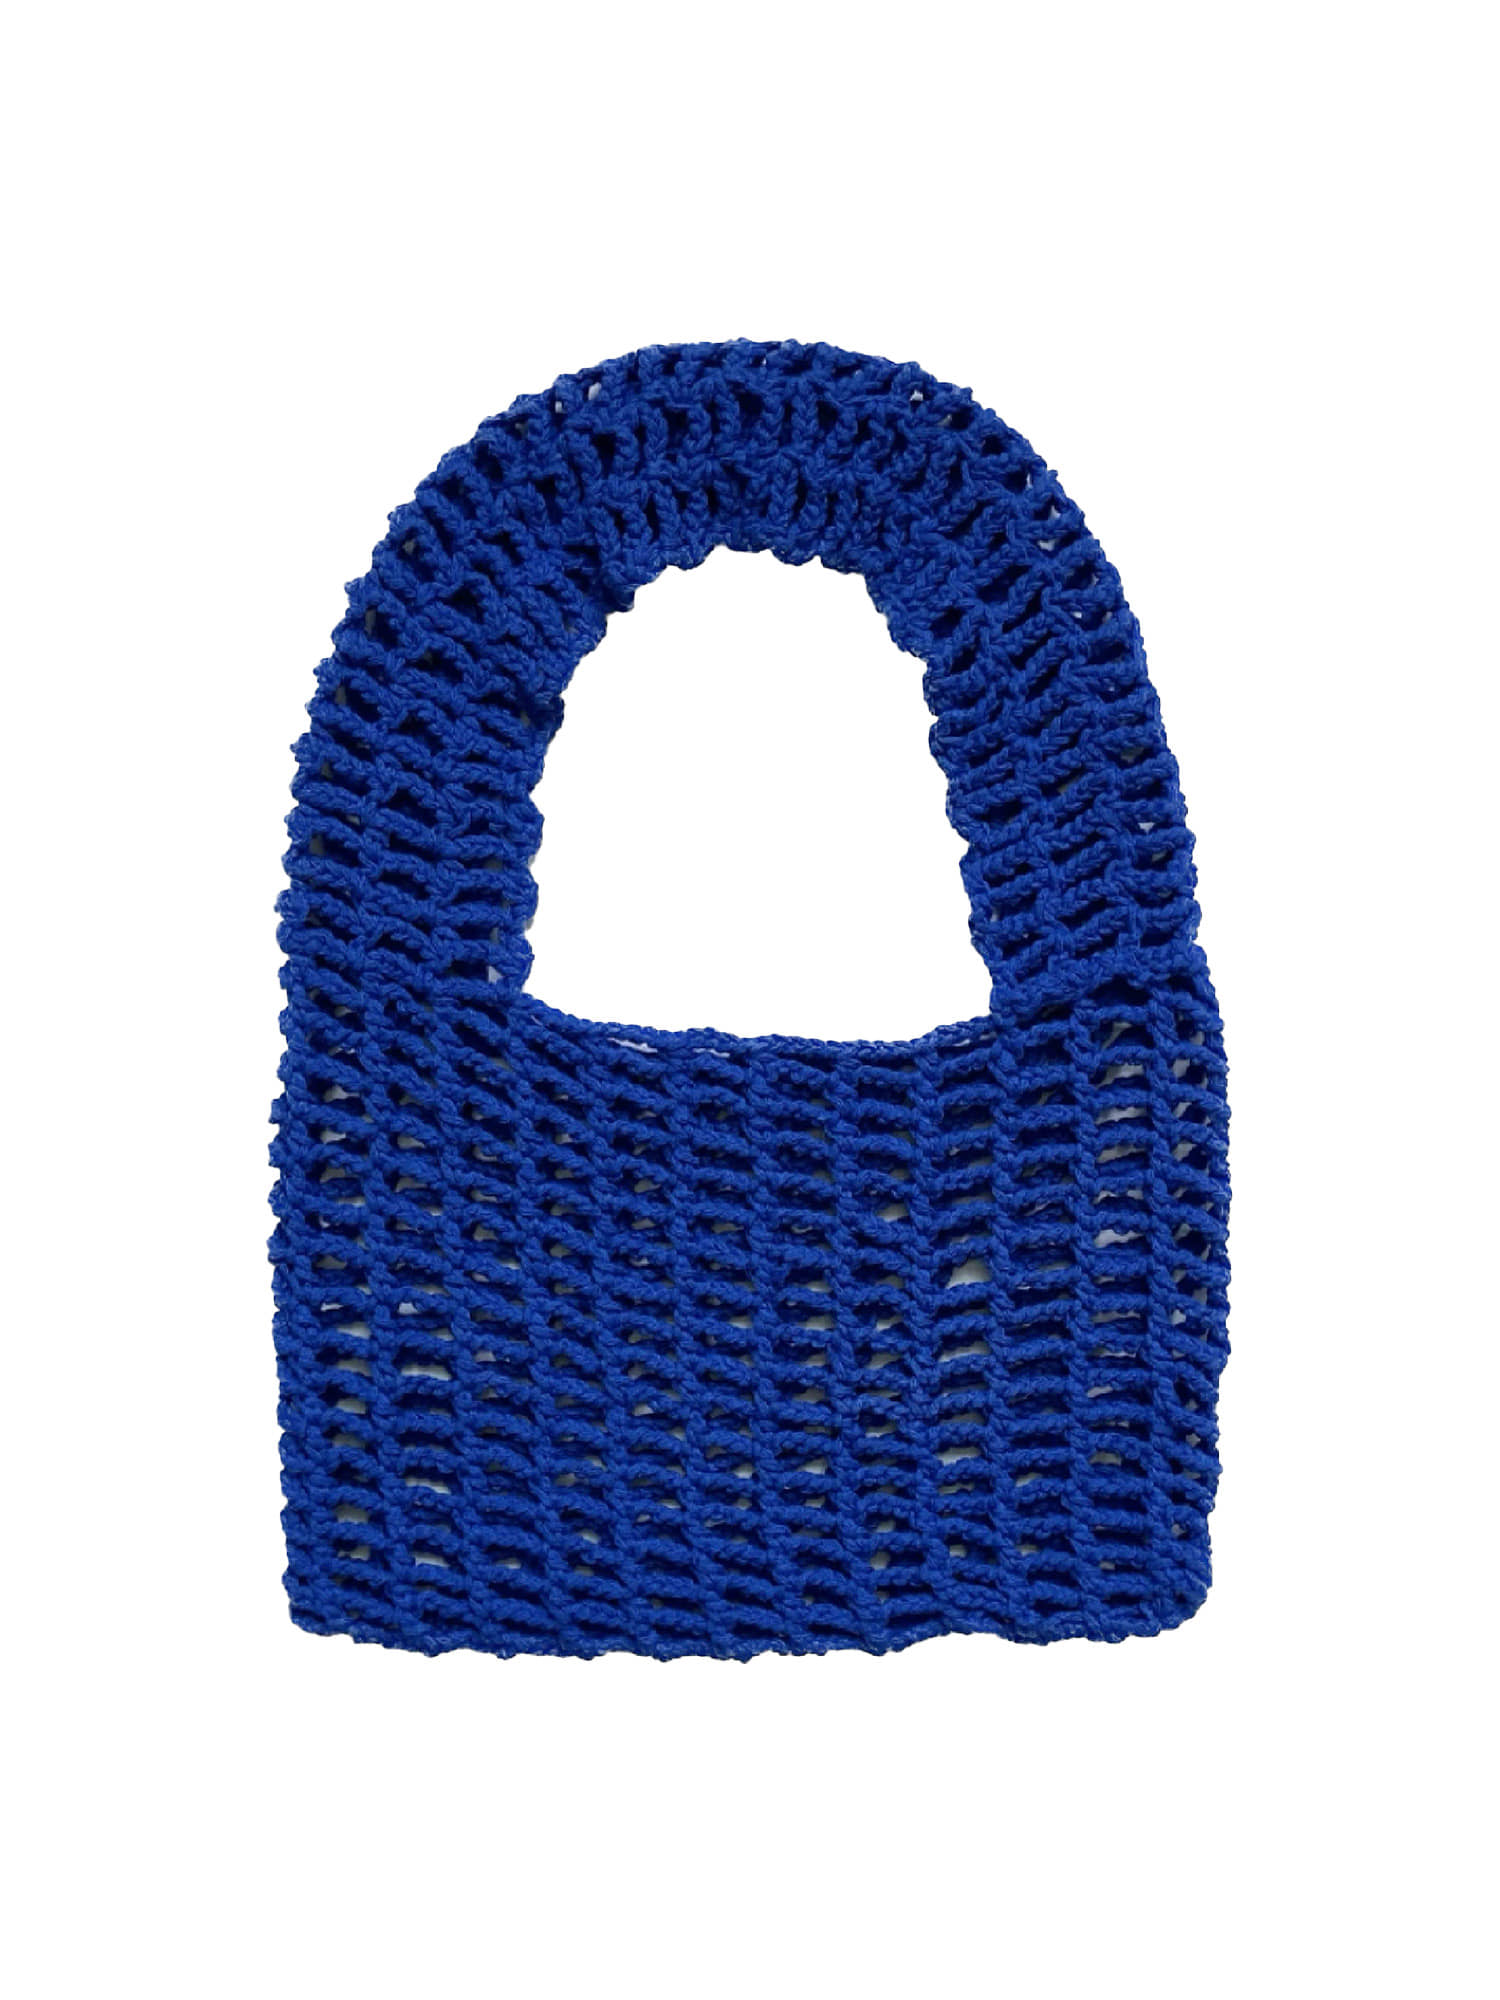 Net Bag - Blue